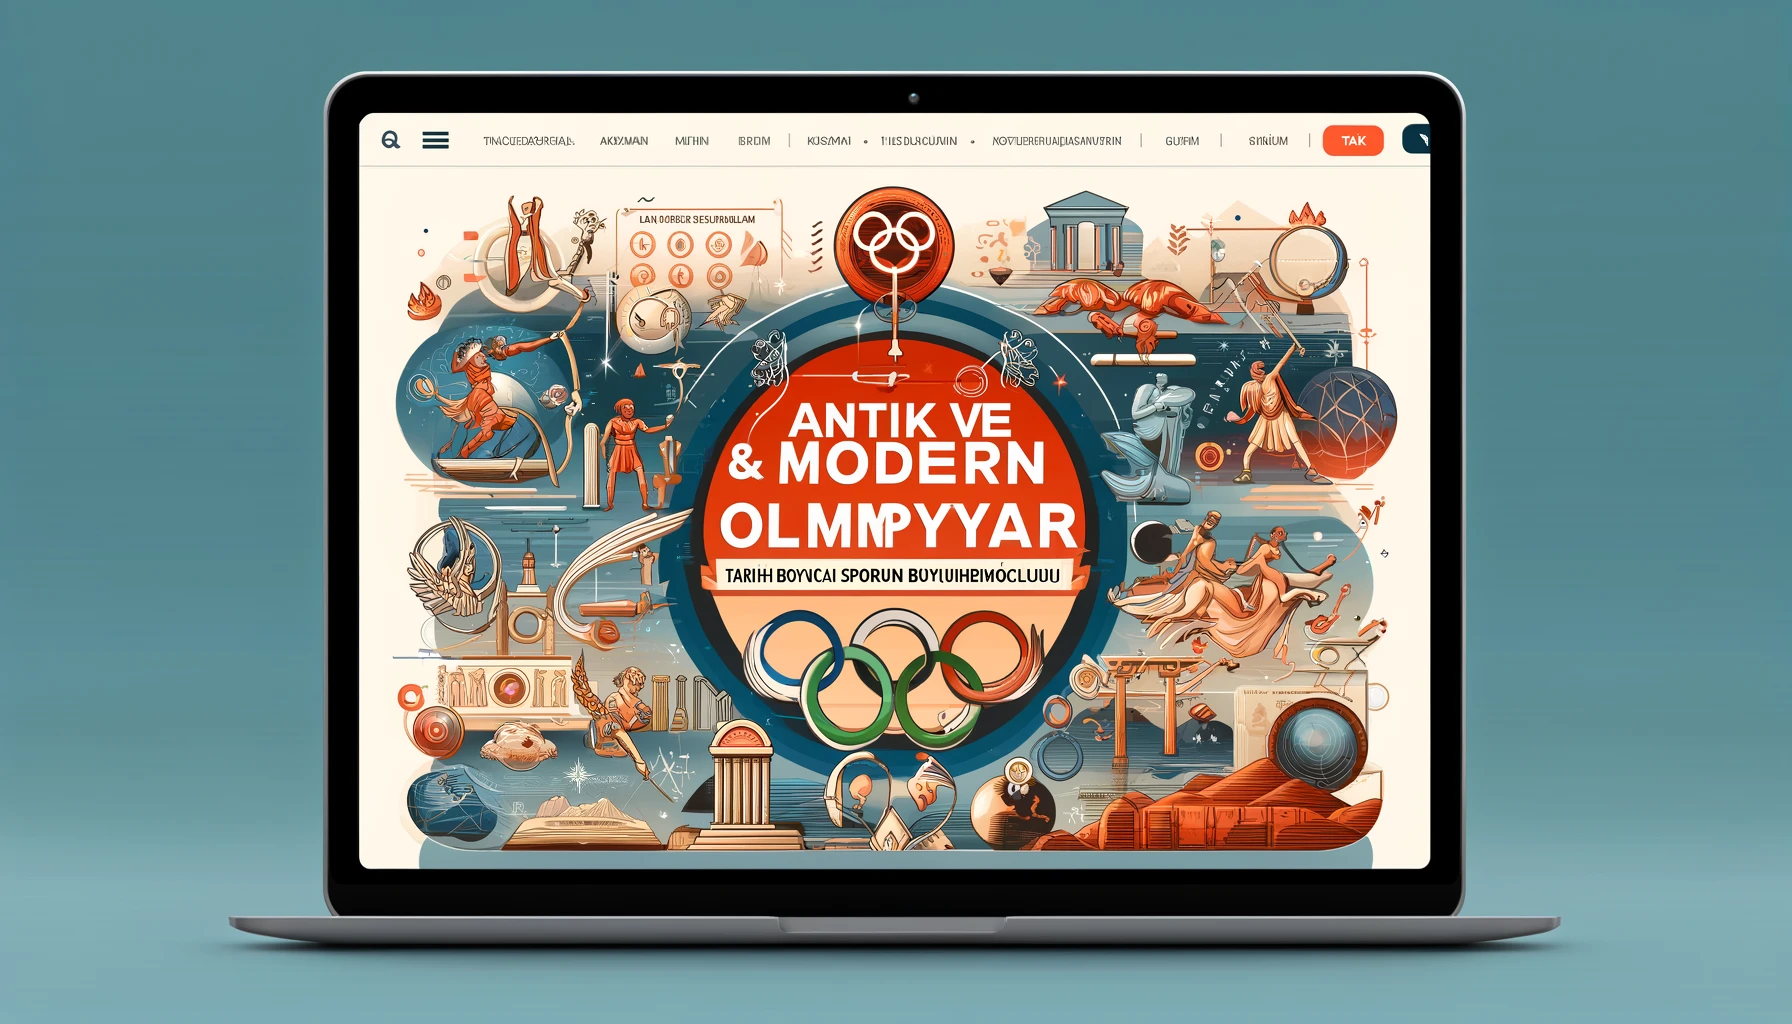 Antik ve Modern Olimpiyatlar: Tarih Boyunca Sporun Büyüleyici Yolculuğu